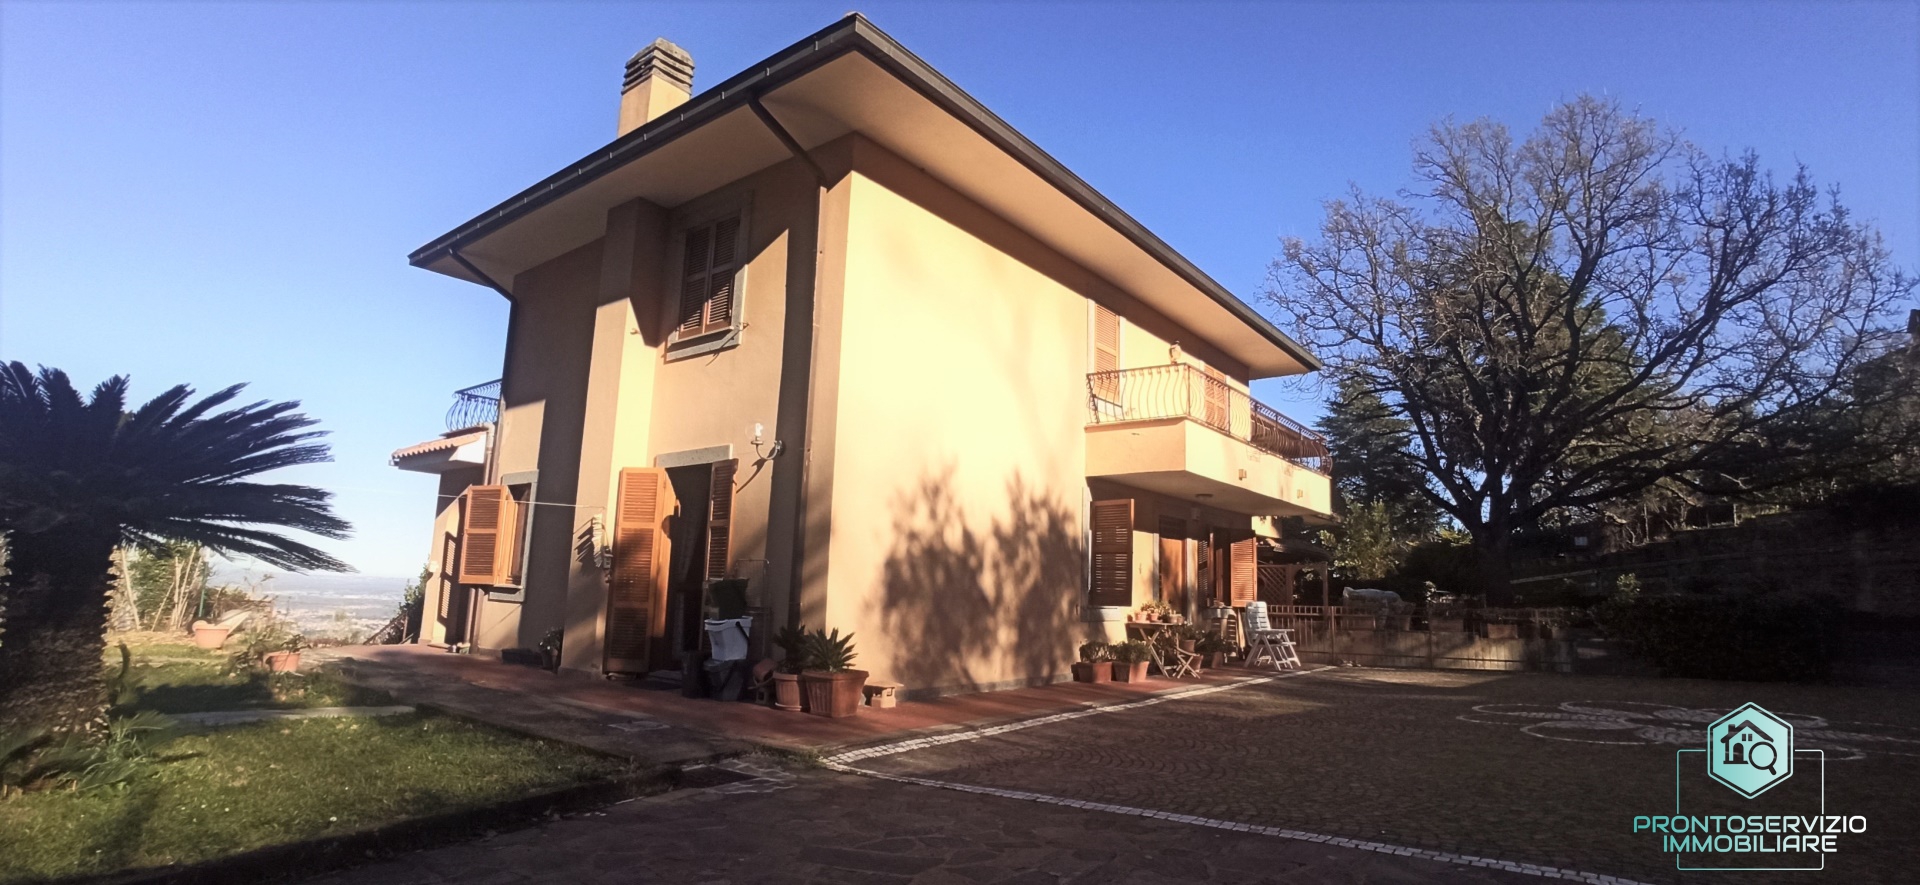 Villa in vendita a Monte Porzio Catone, 13 locali, prezzo € 560.000 | CambioCasa.it